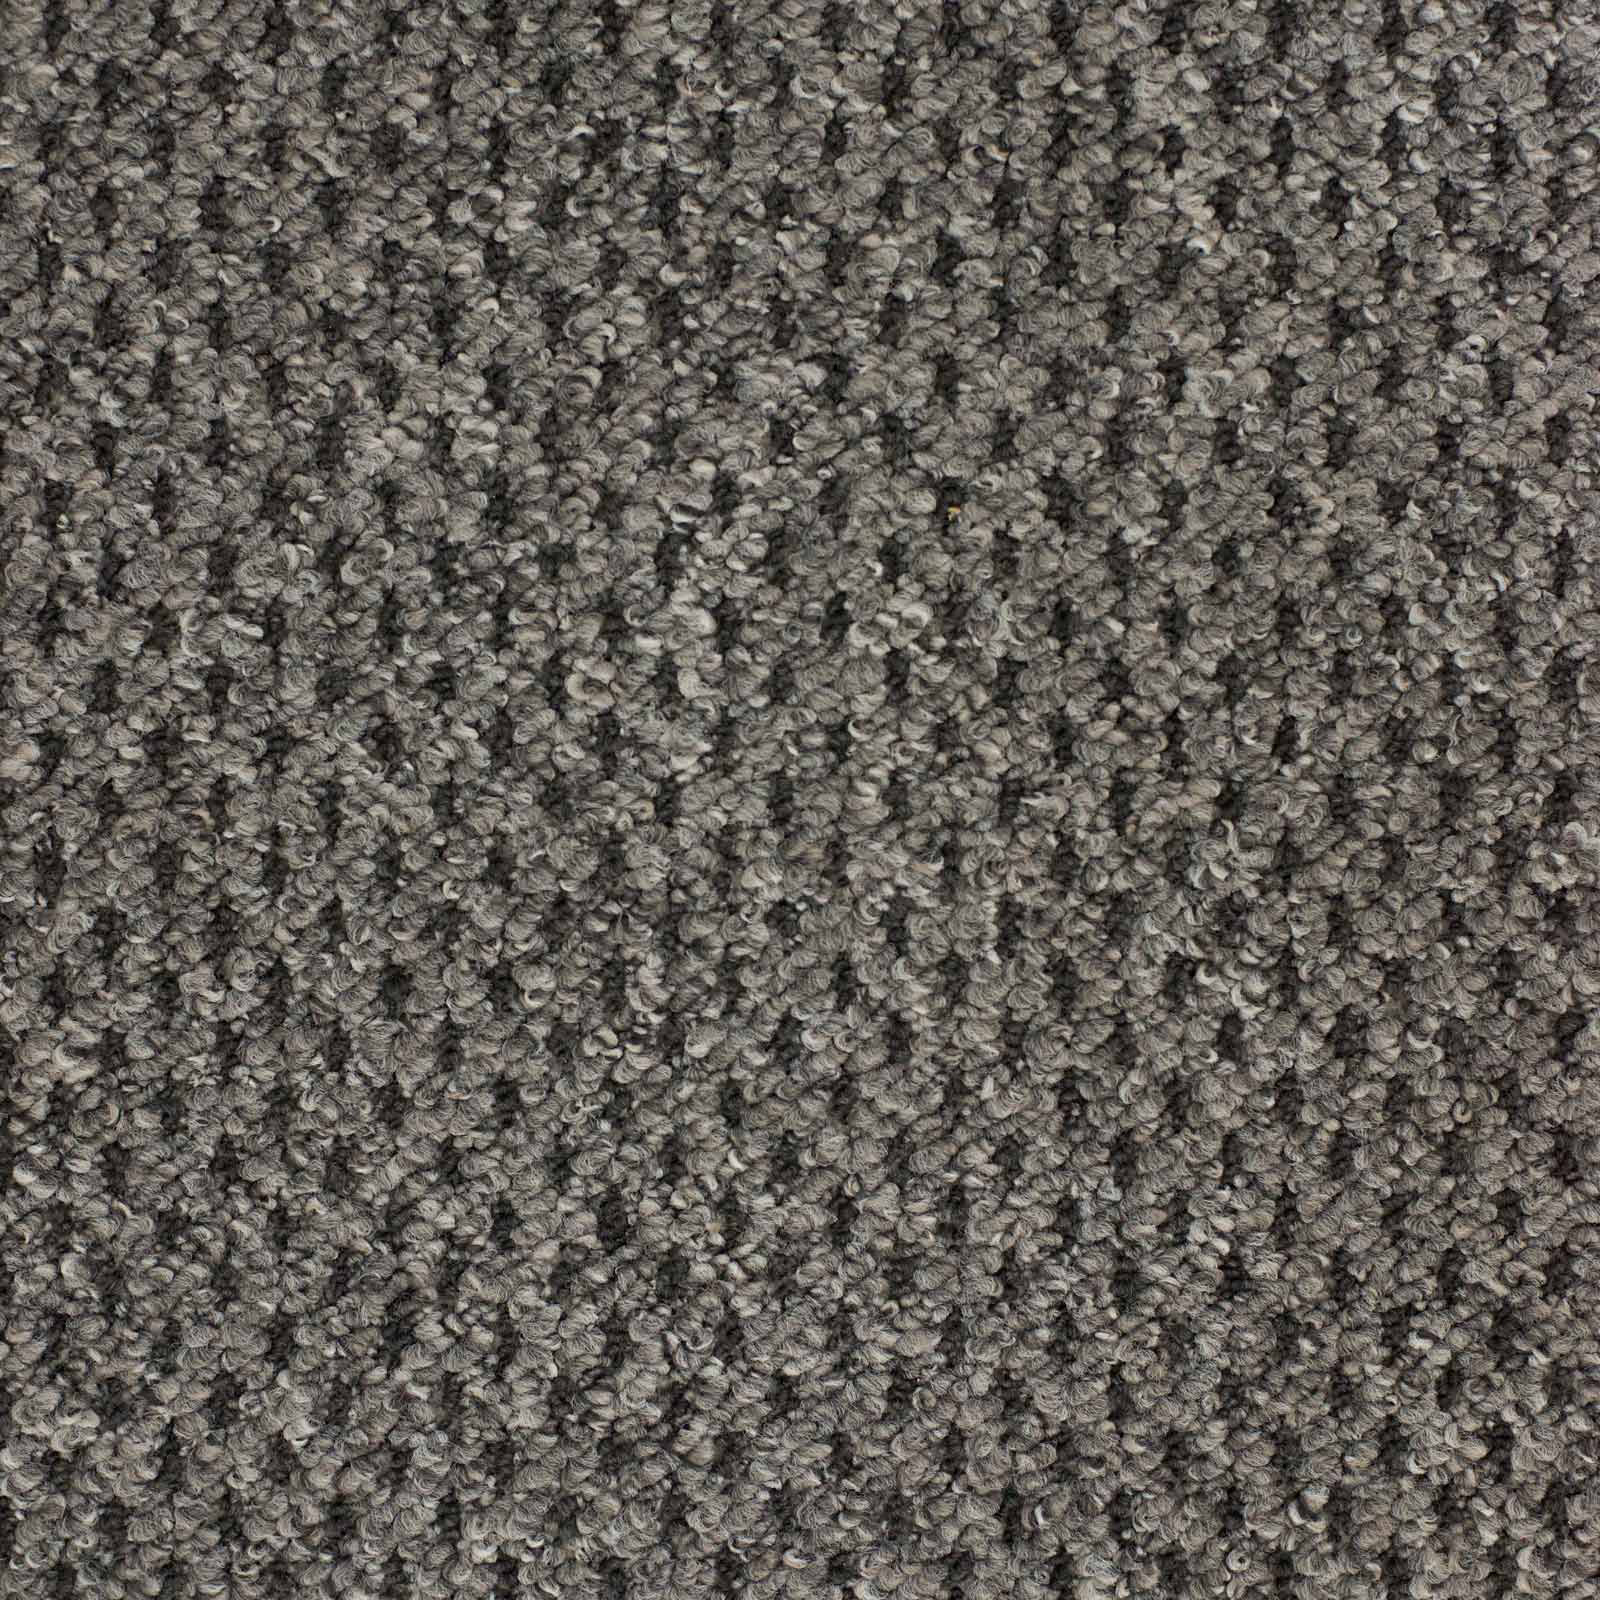 Carpet Type